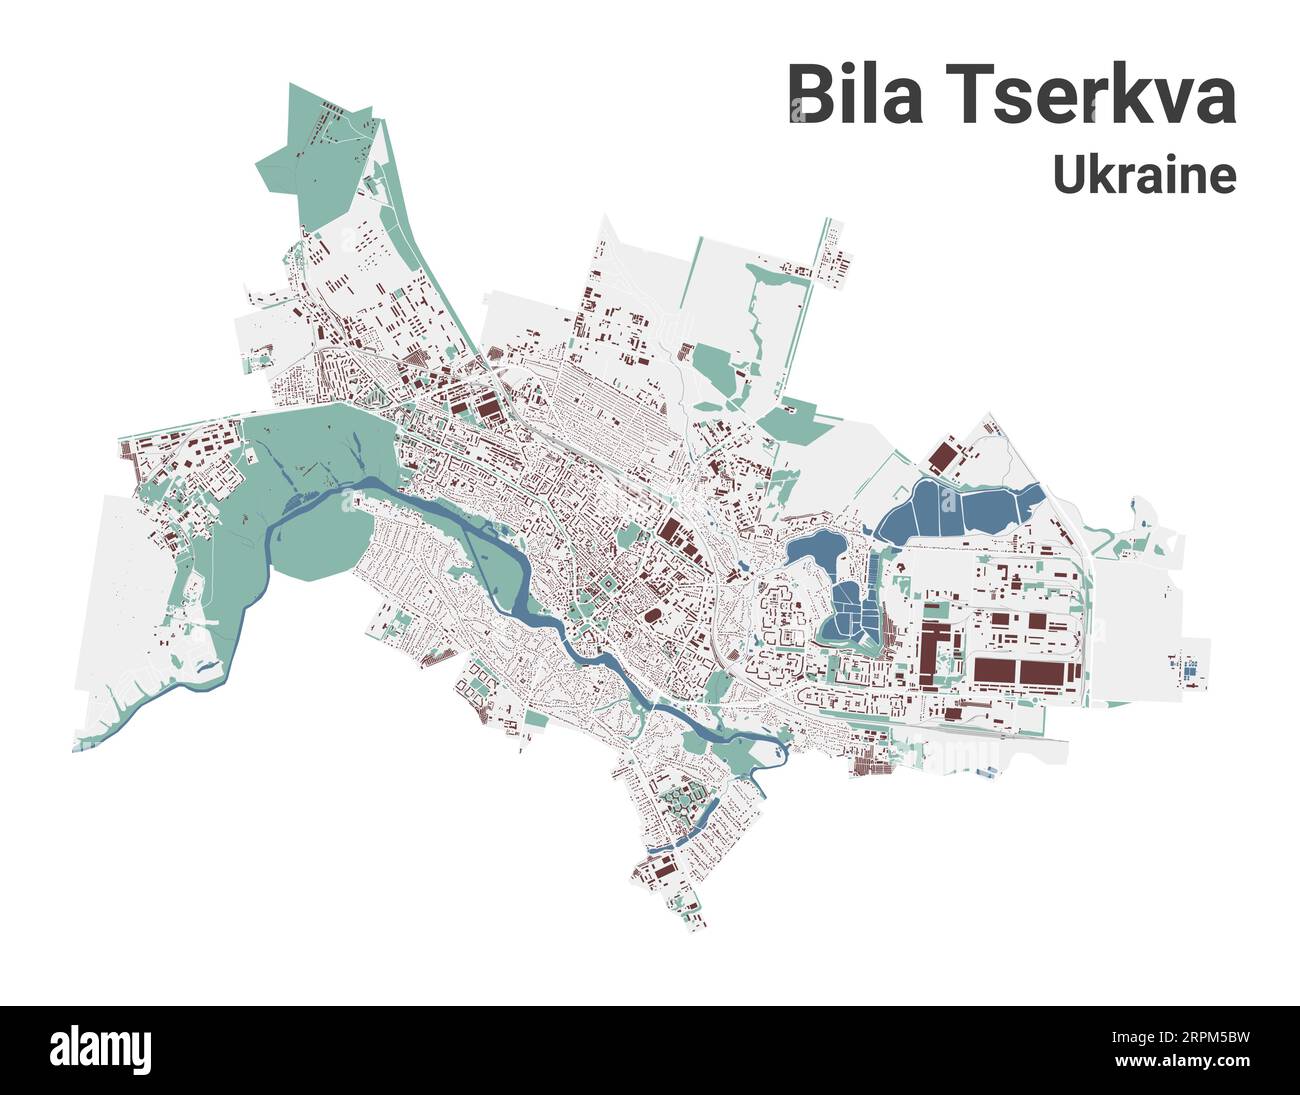 Carte de Bila Tserkva, ville dans Ukraine. Carte de la zone administrative municipale avec les bâtiments, les rivières et les routes, les parcs et les voies ferrées. Illustration vectorielle. Illustration de Vecteur